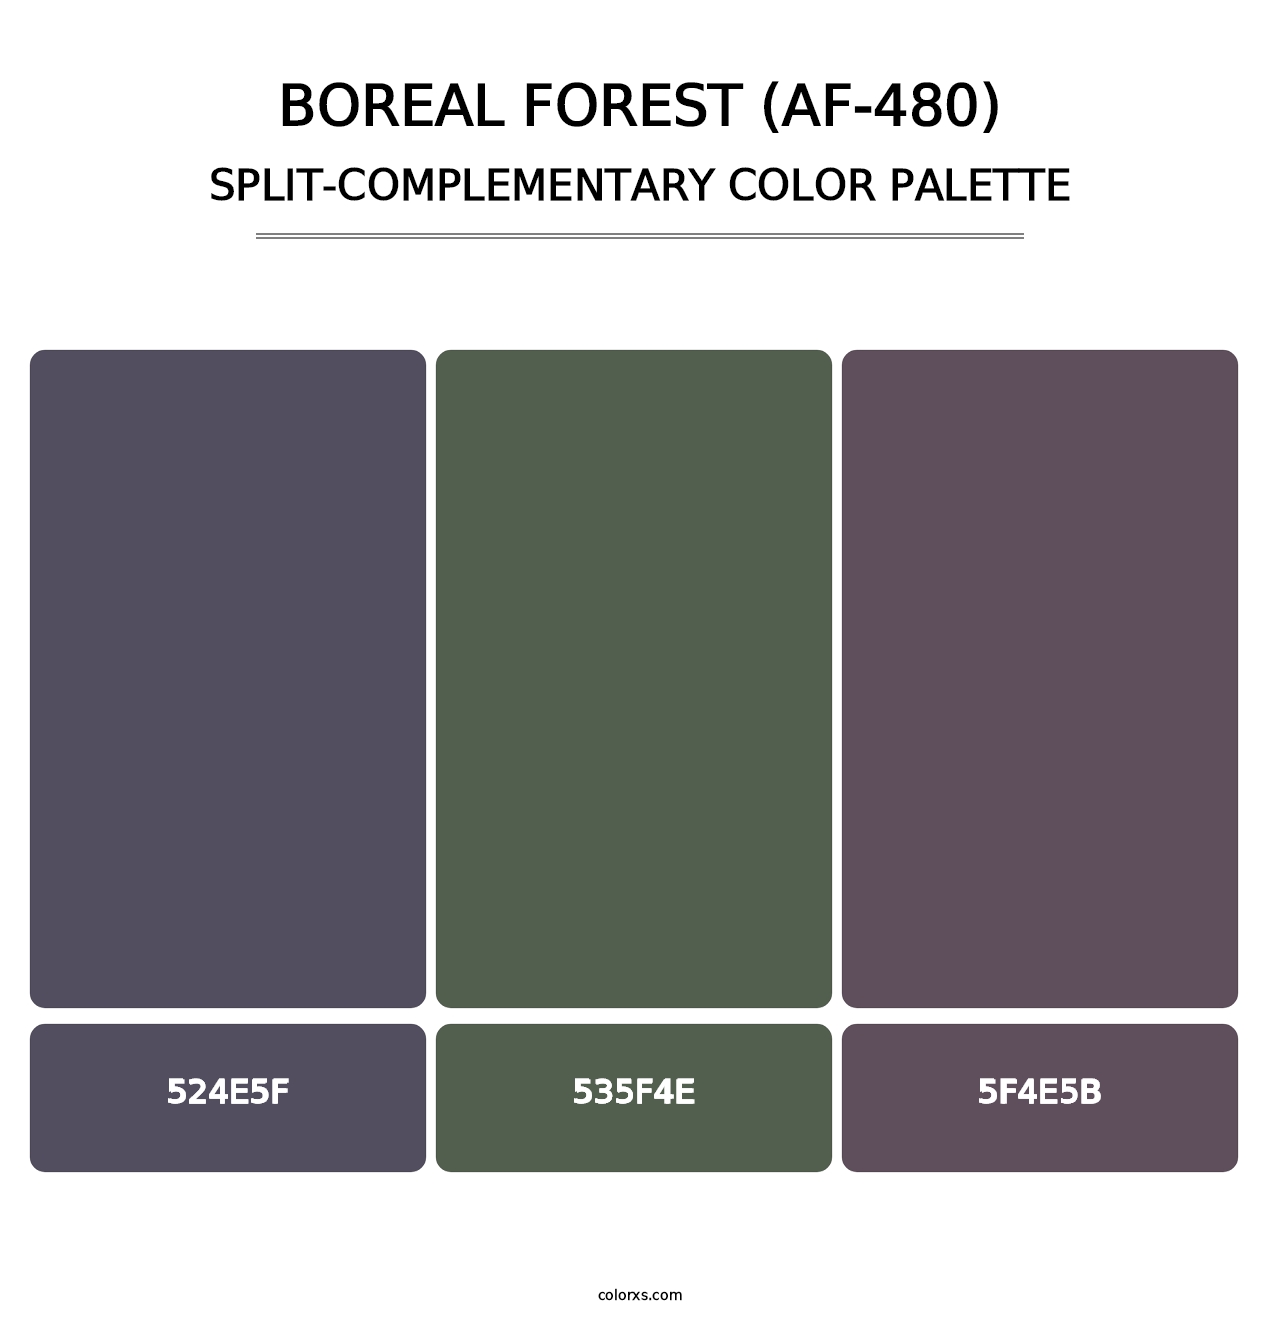 Boreal Forest (AF-480) - Split-Complementary Color Palette